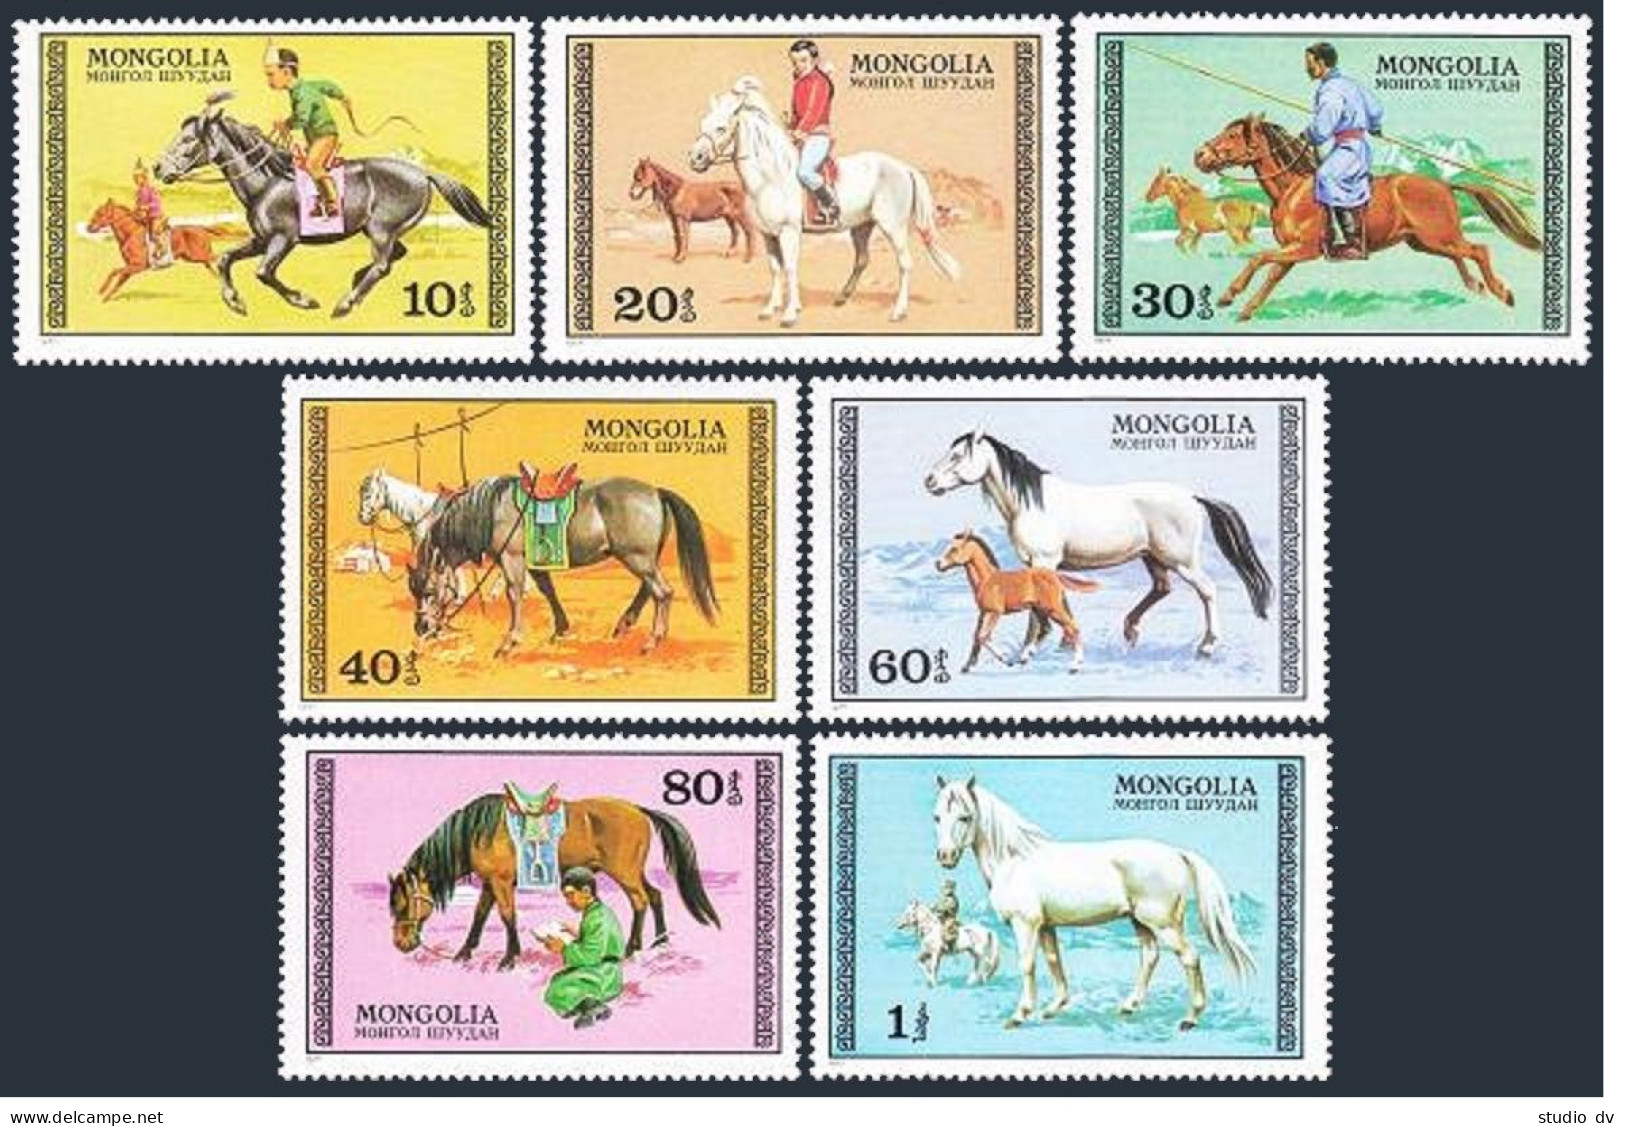 Mongolia 962-968, MNH. Michel 1056-1062. Horses, Horseback, 1977. - Mongolei